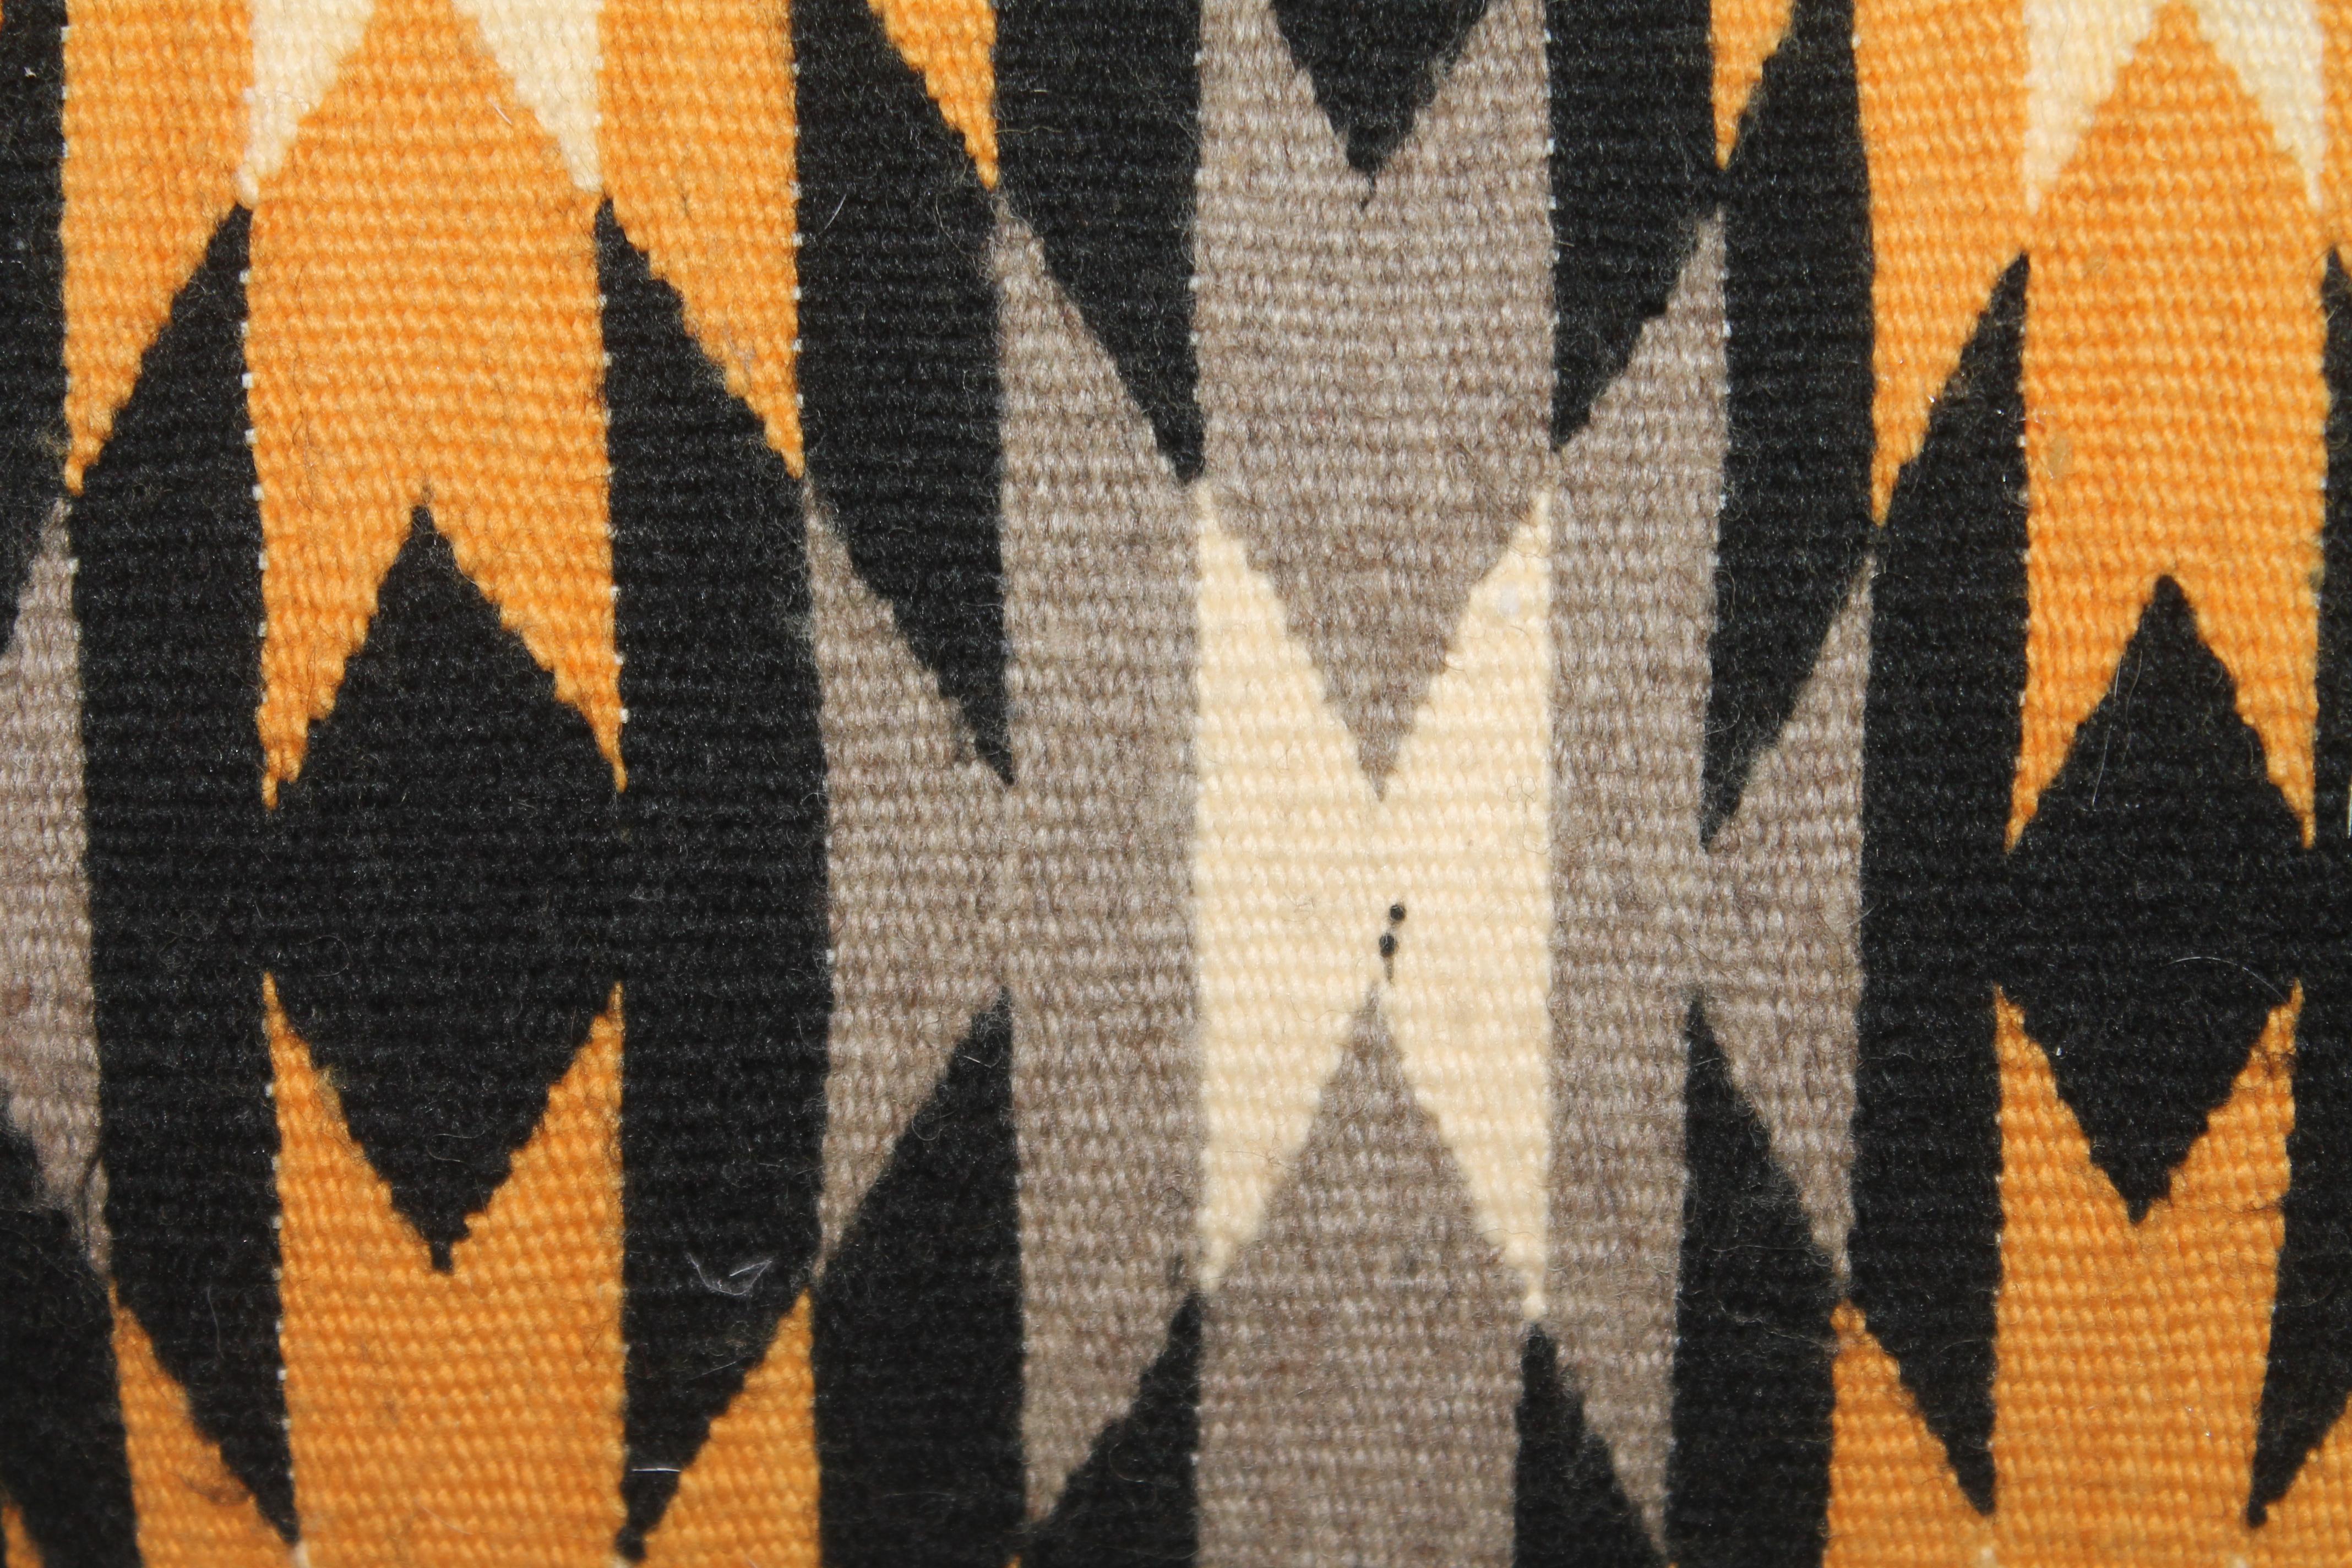 Oreiller ancien en tissage de motifs géométriques Nevajo fait sur mesure.
Insert en plumes et duvet neufs.